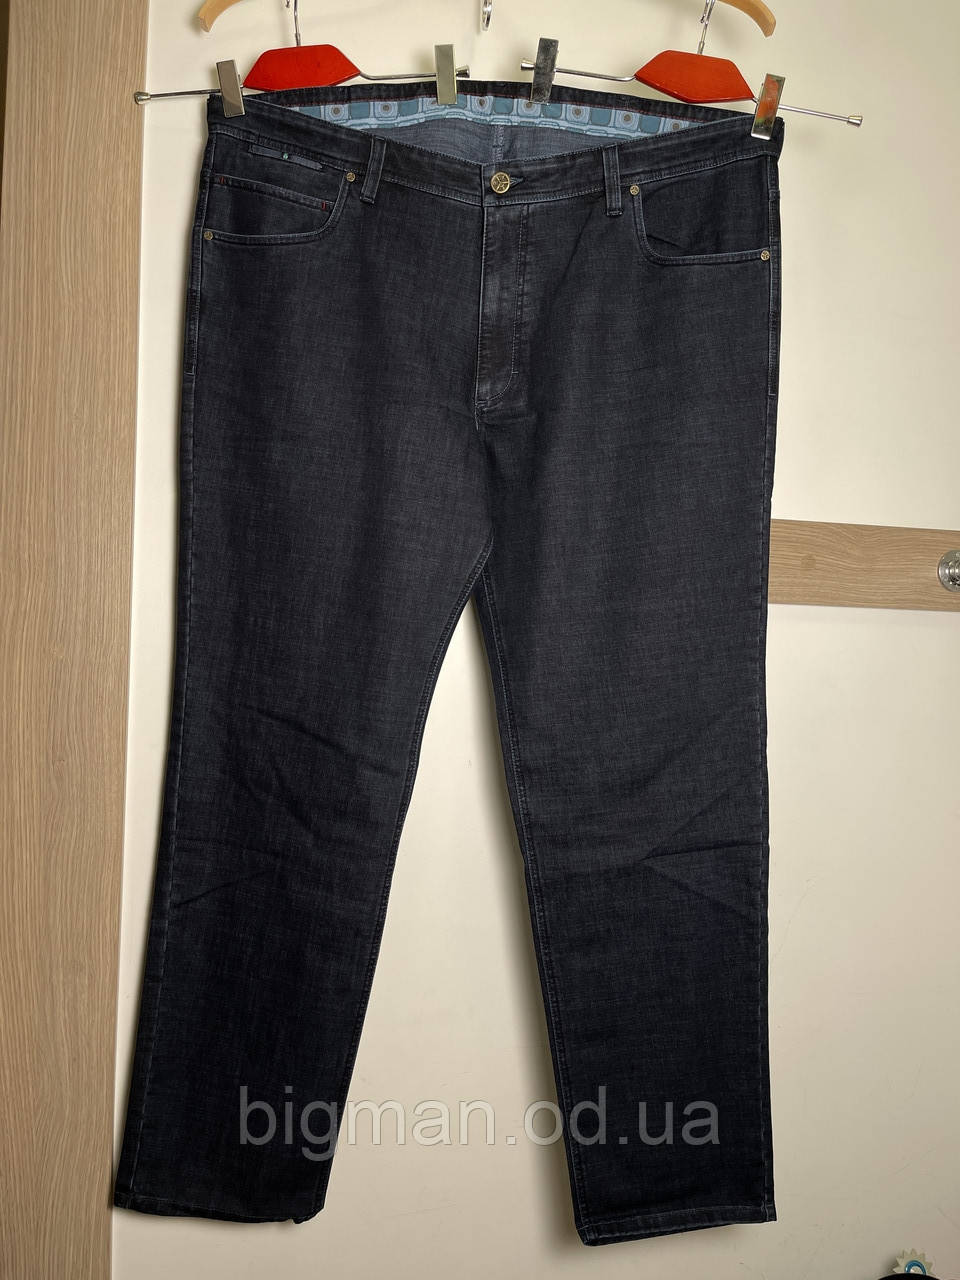 Темно-сині чоловічі джинси на ремені IFC 58-70 розміру великого батального розміру Туреччина